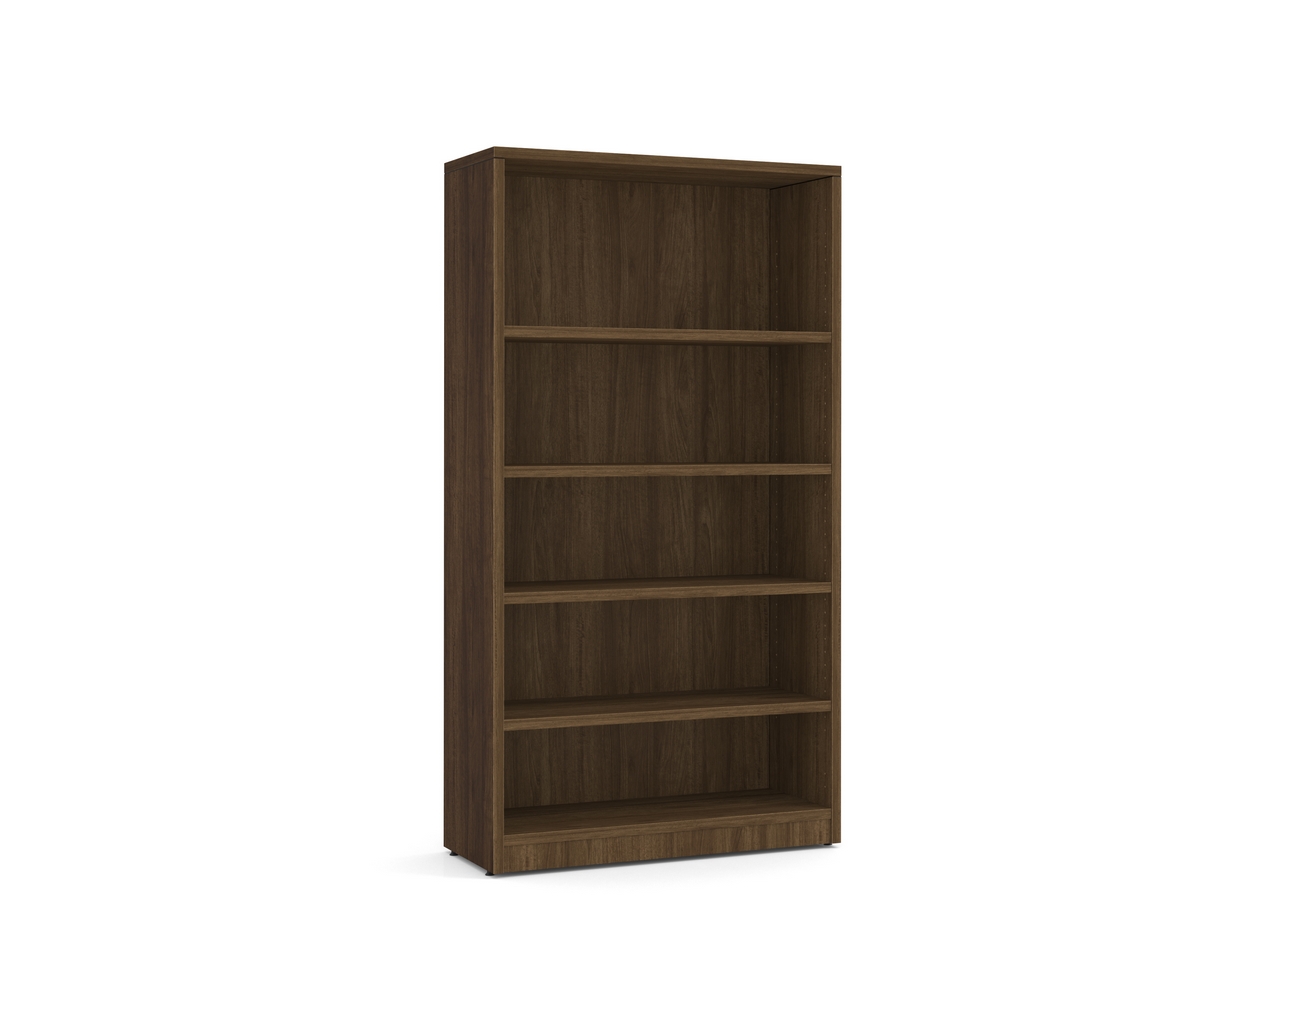 Heavy Duty Bookshelves – 5 Shelf in Modern Walnut